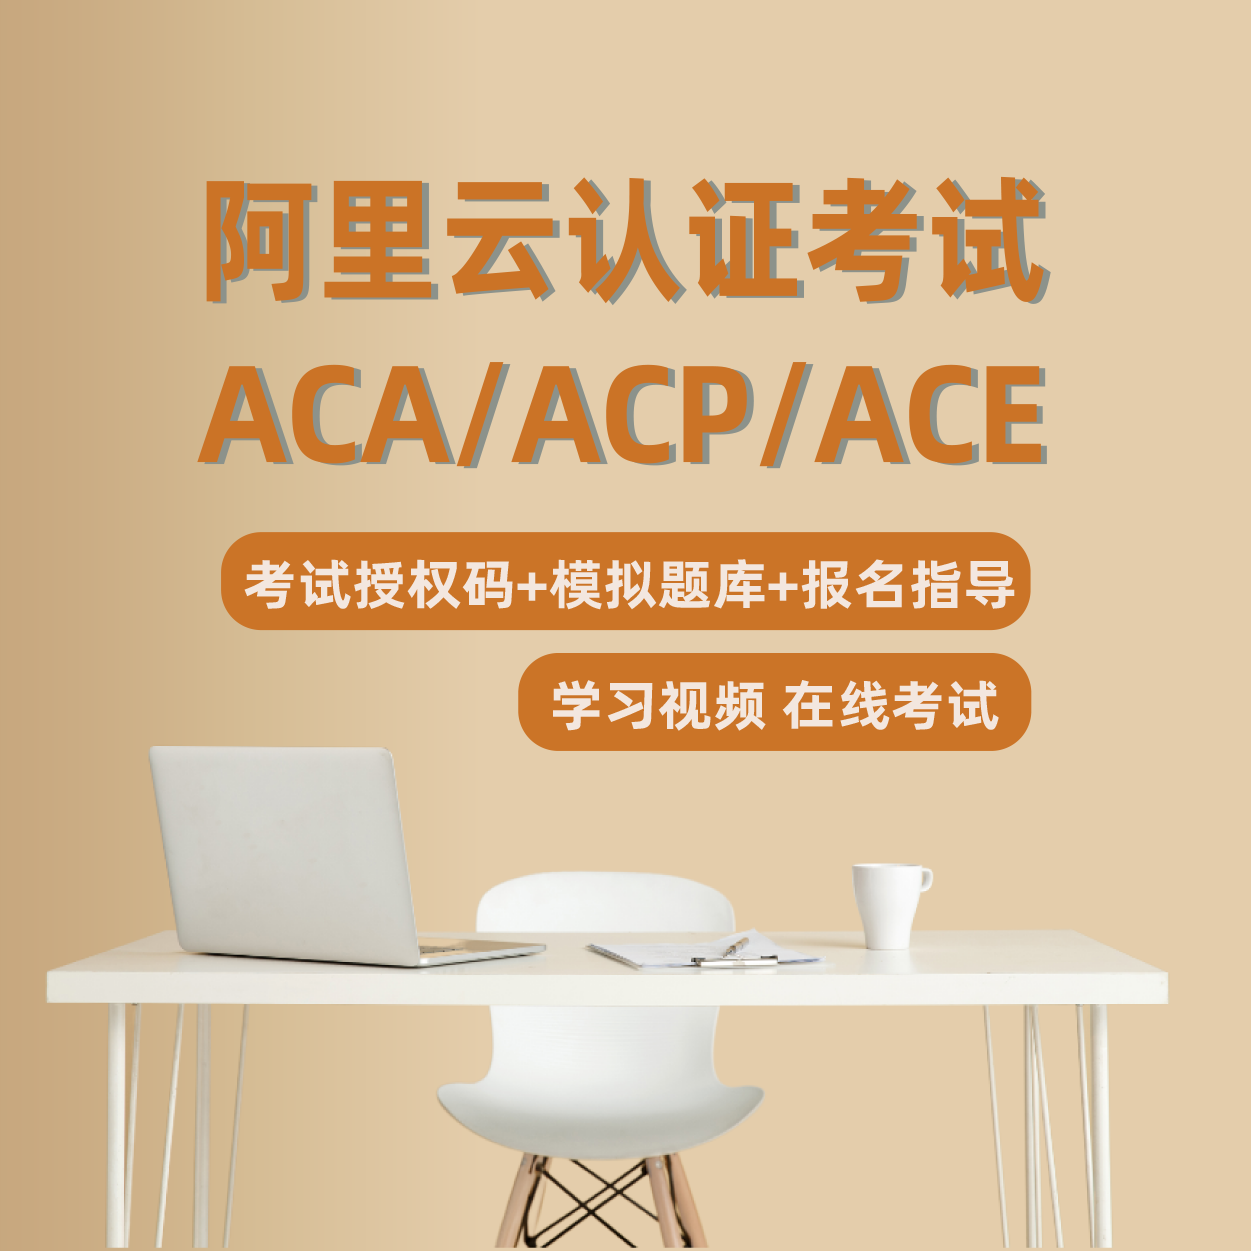 阿里云ACA/ACP/ACE认证报名培训题库视频云计算在线考试答疑资料